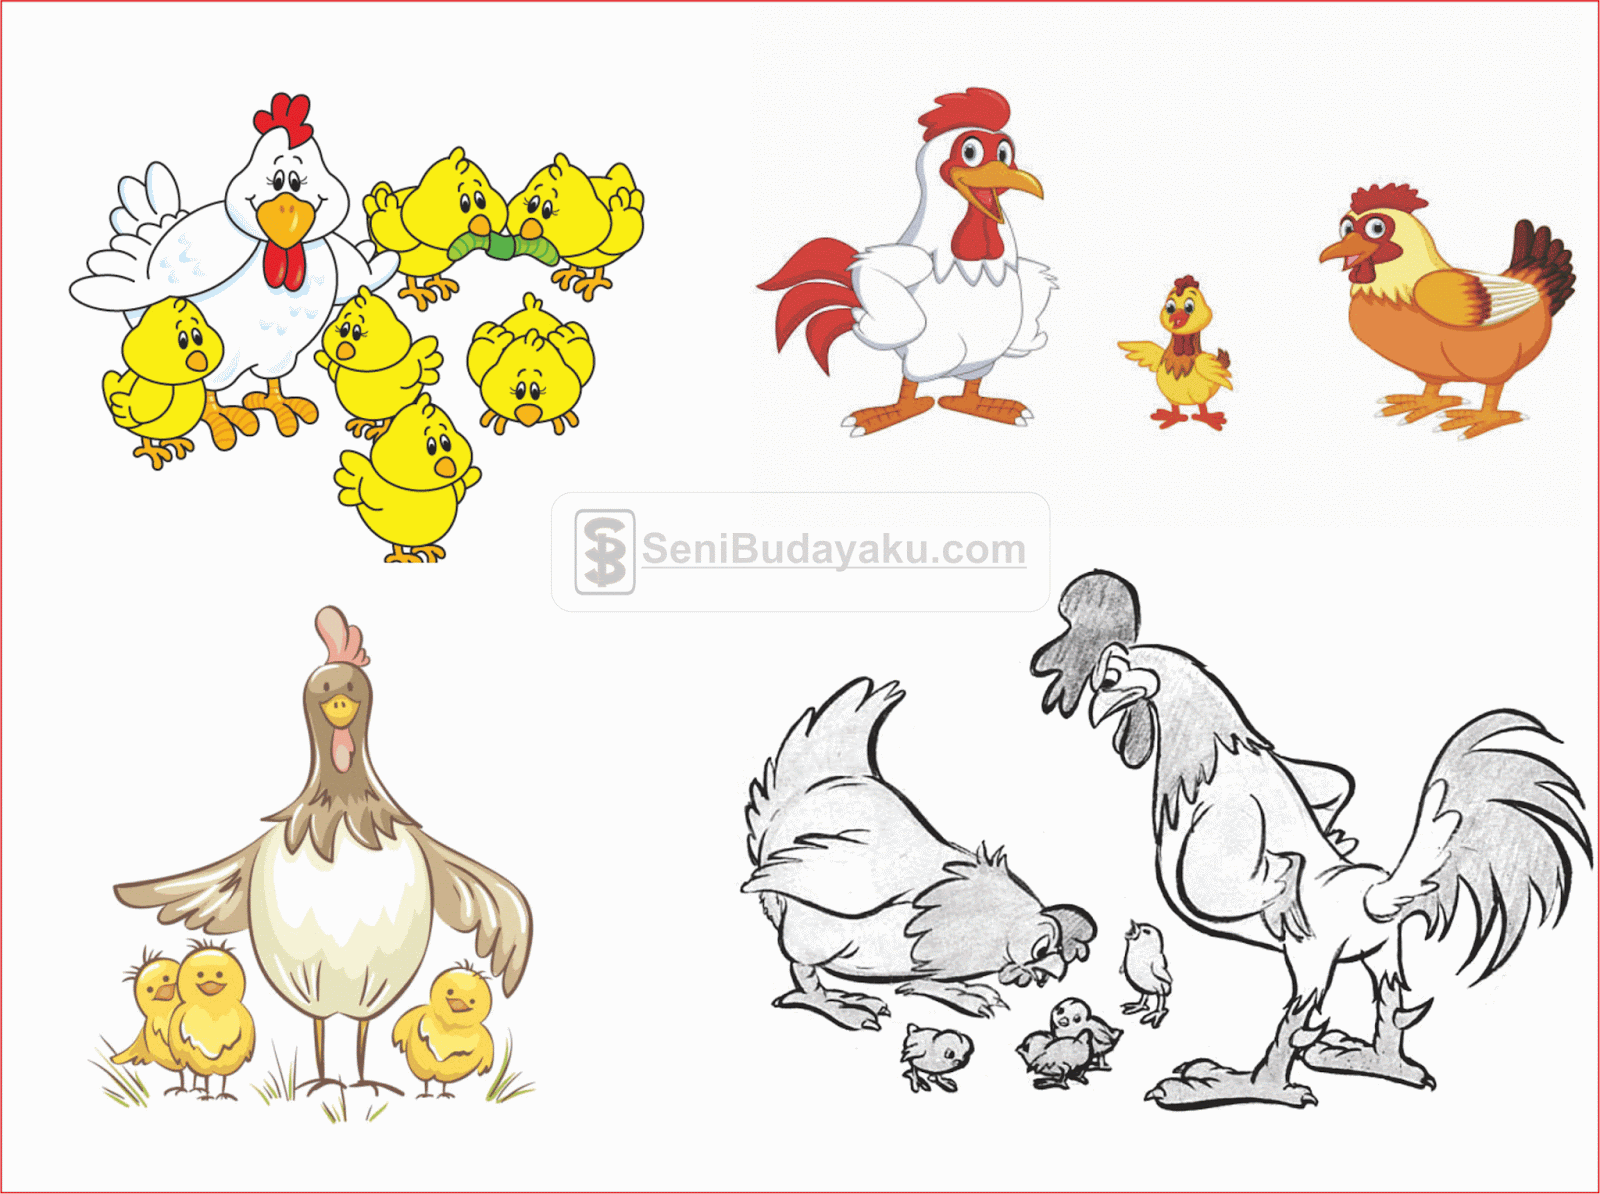 43 Gambar Kartun Ayam Sedang Makan Gratis Terbaru Gambar Kantun